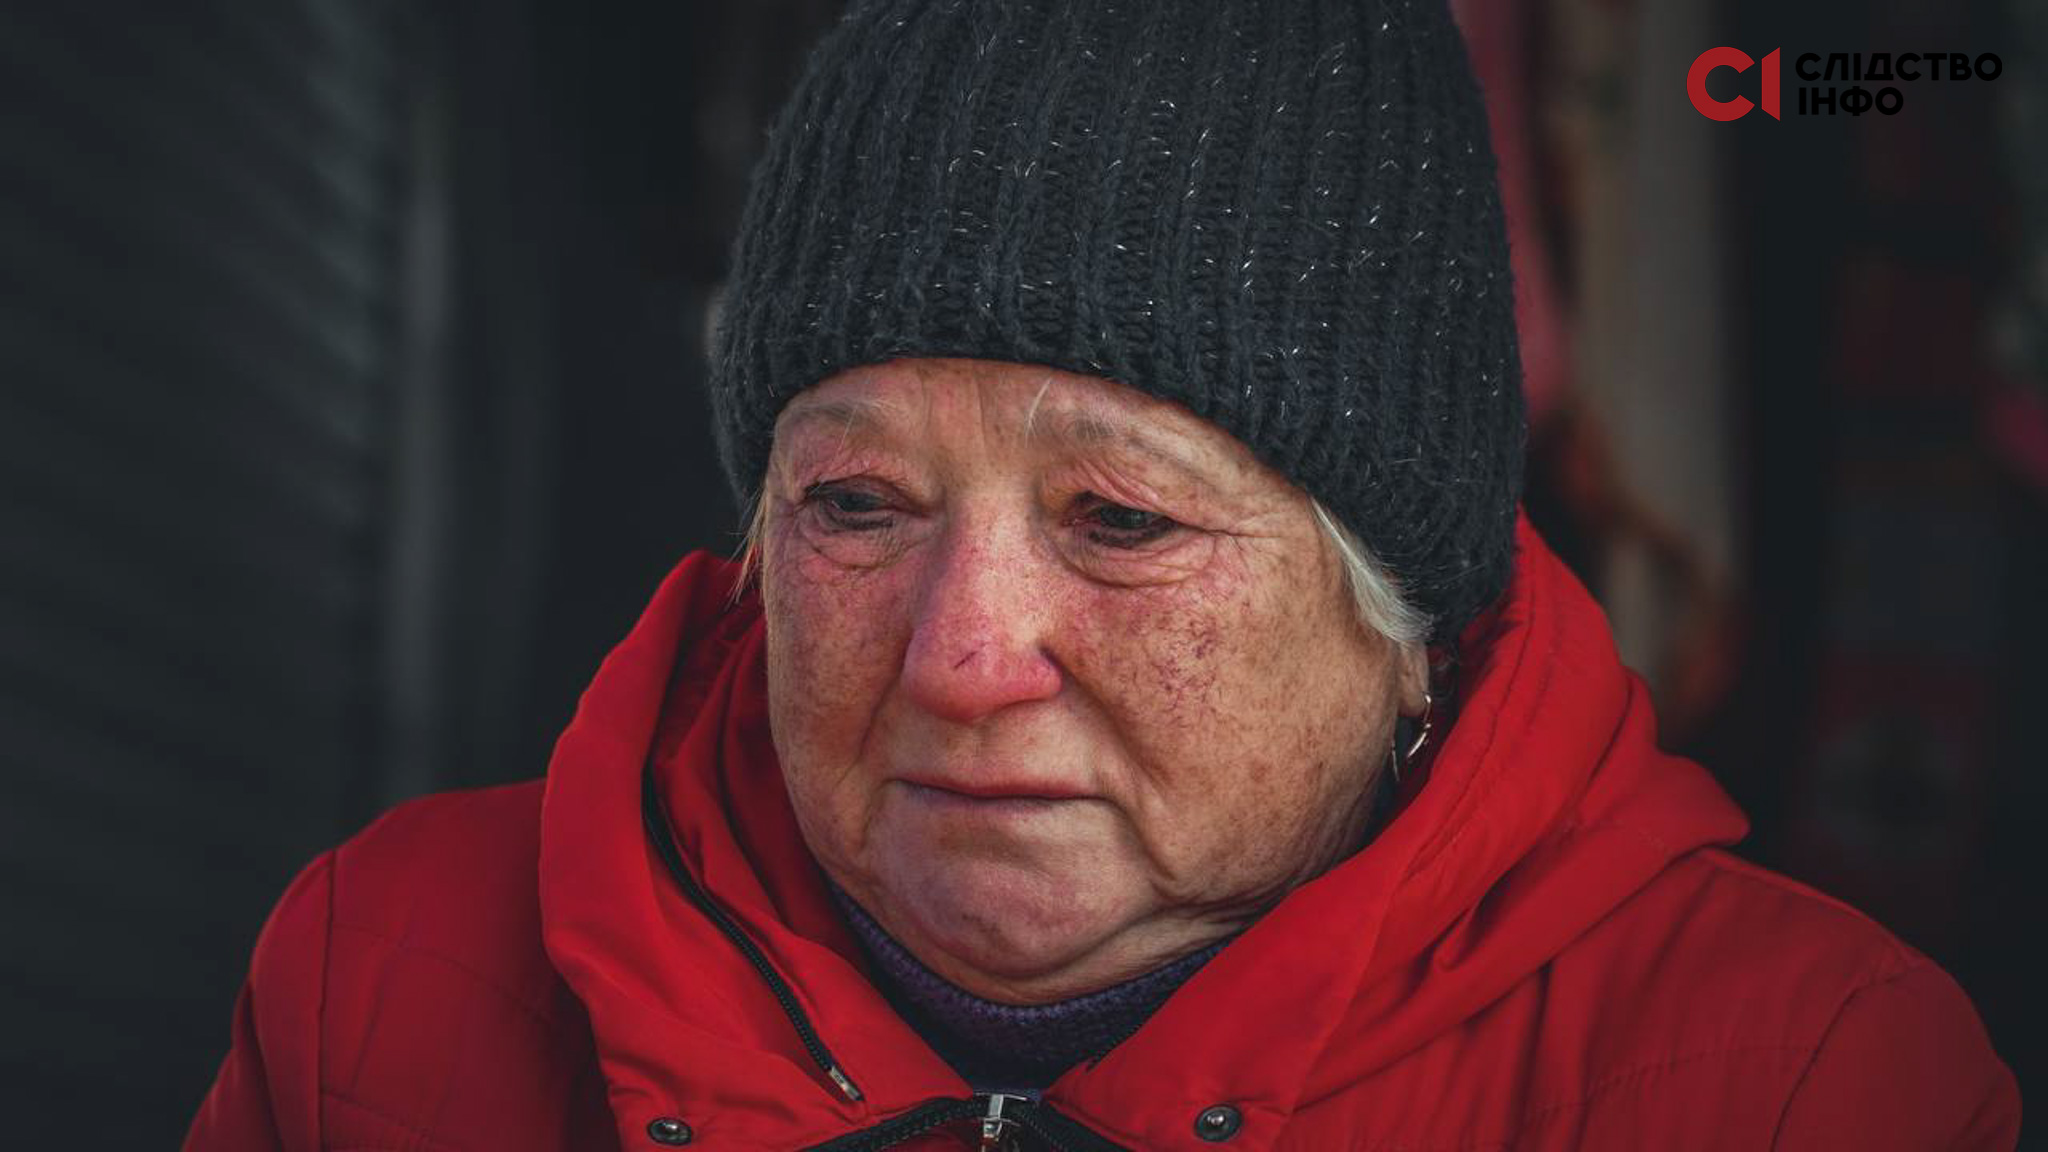 Заплакана старша жінка у чорній шапці й червоній куртці